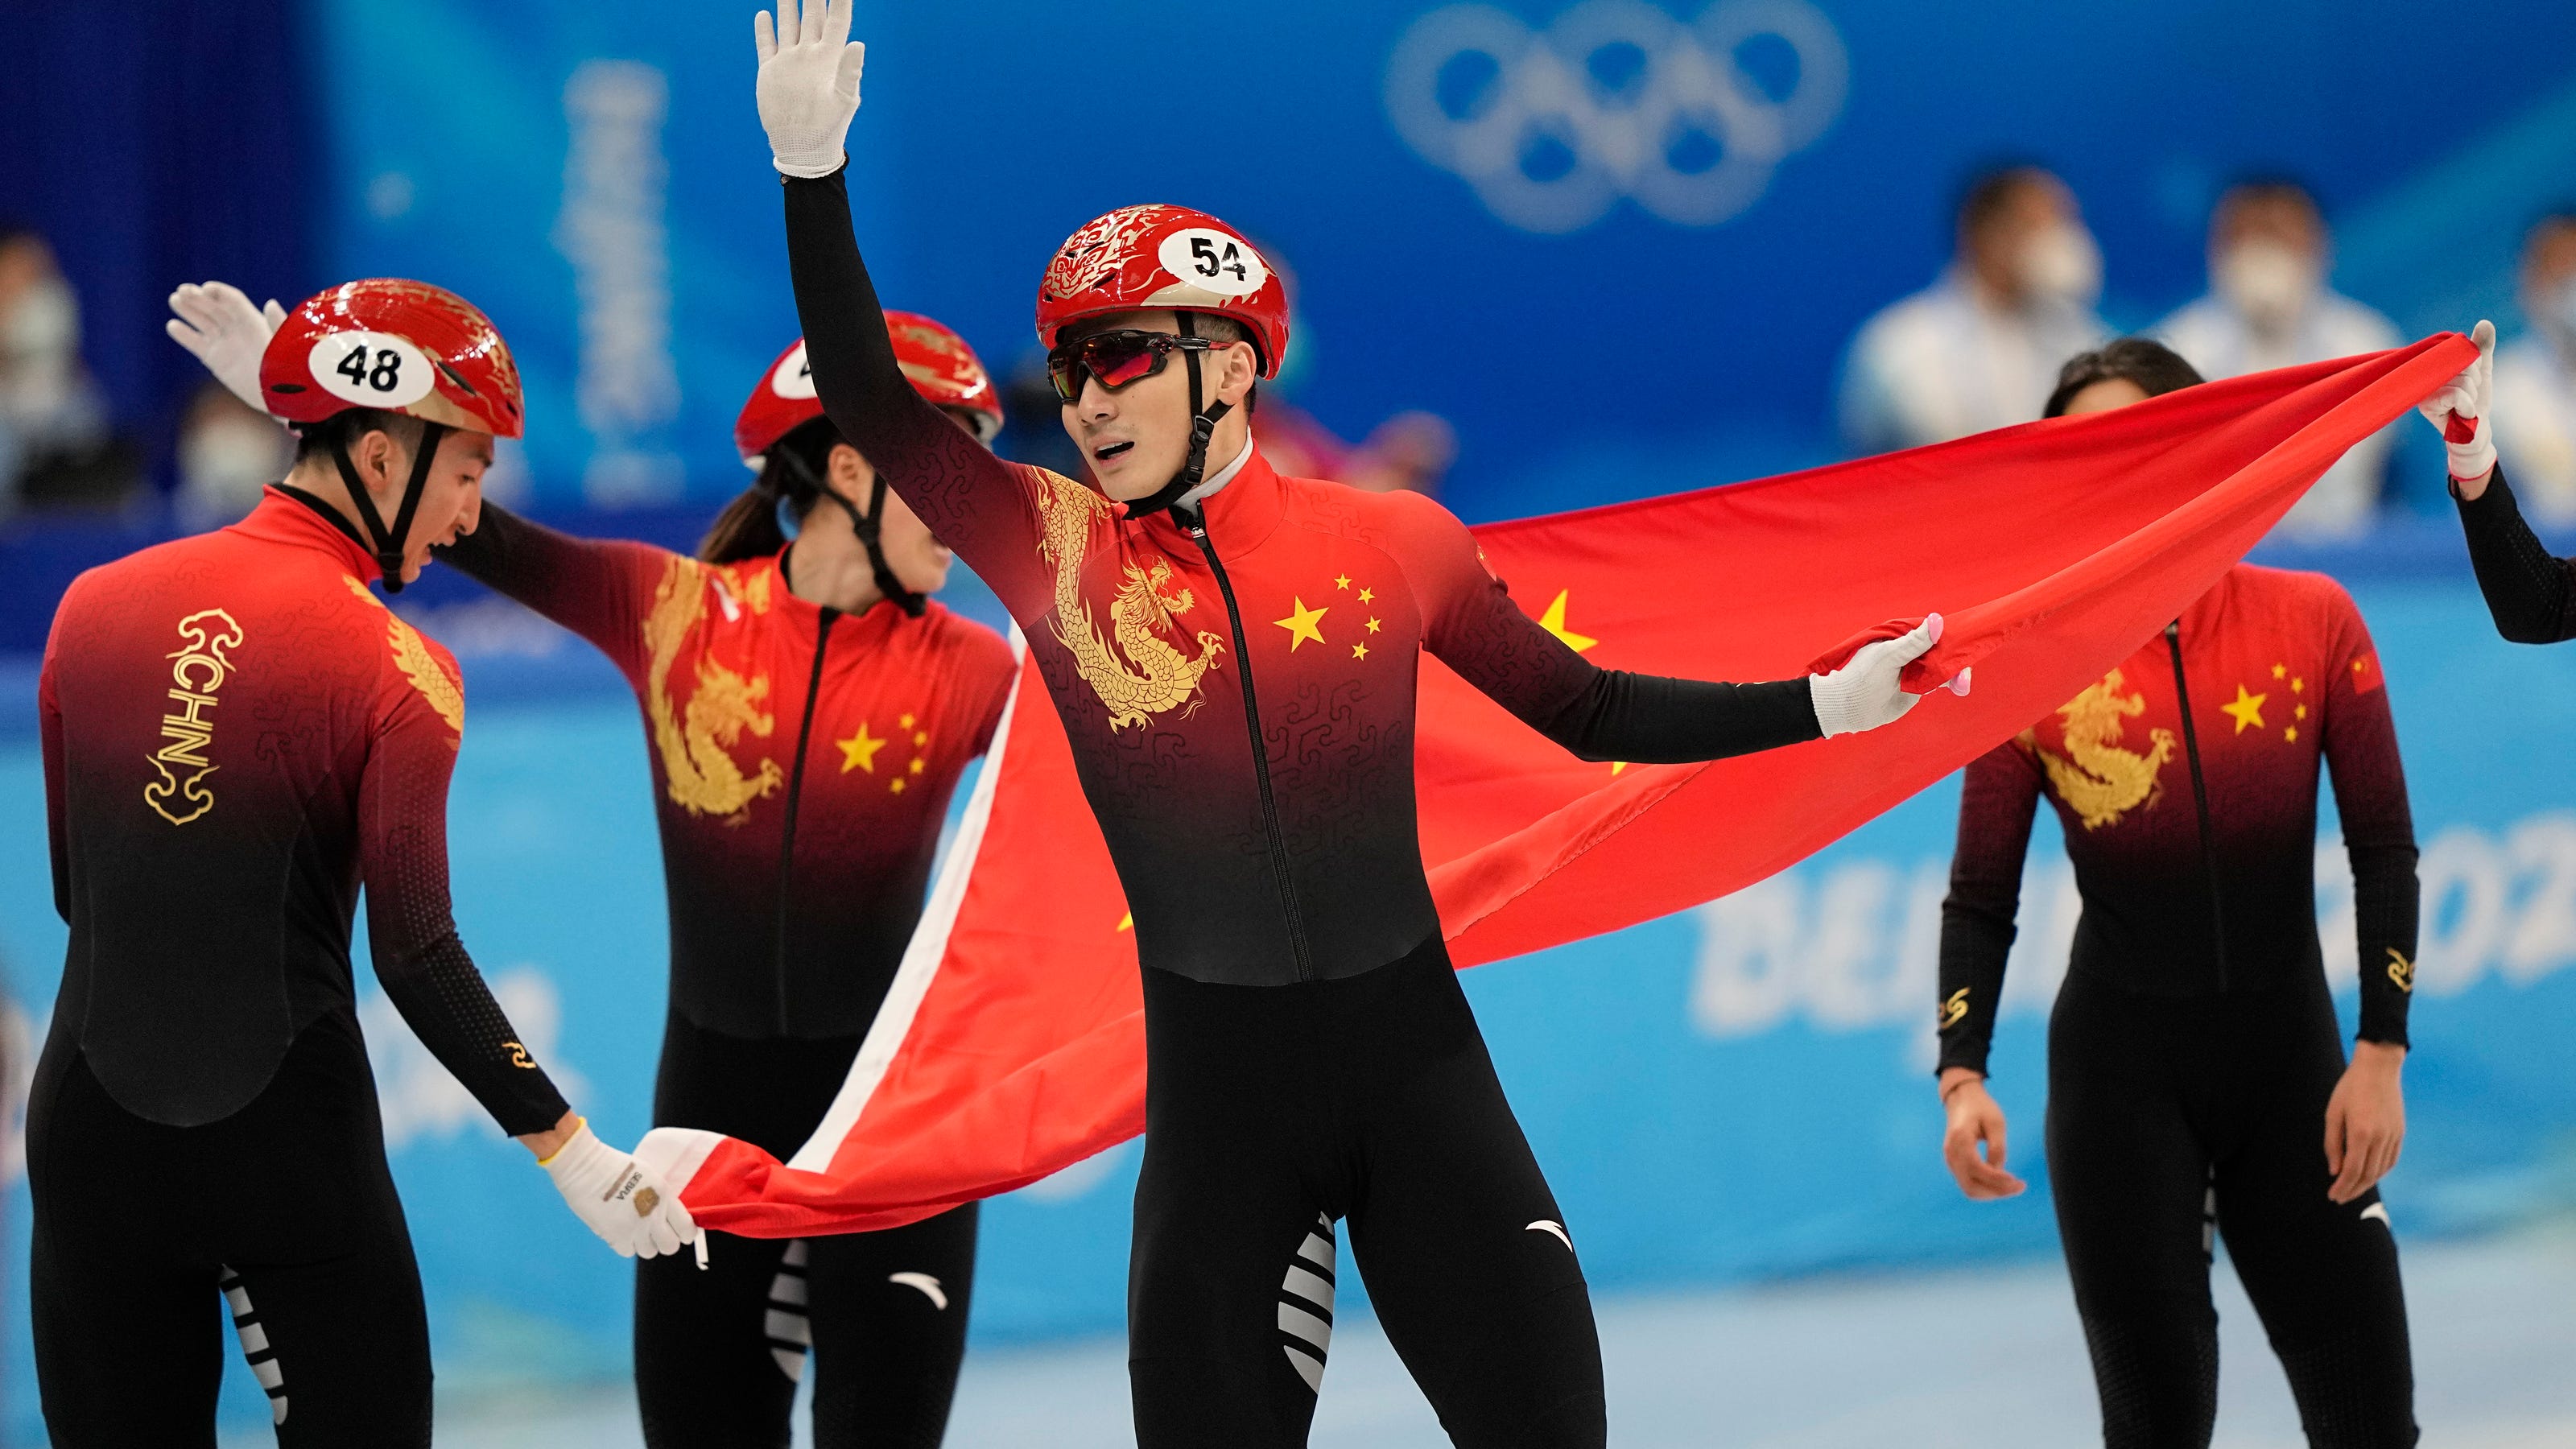 Красных олимпийские игры. Шорт трек Китай на Олимпийских играх 2022. Шорт трек Пекин. Beijing 2022 short track Speed Skating. Сборная Китая на Олимпиаде в Пекине 2022.